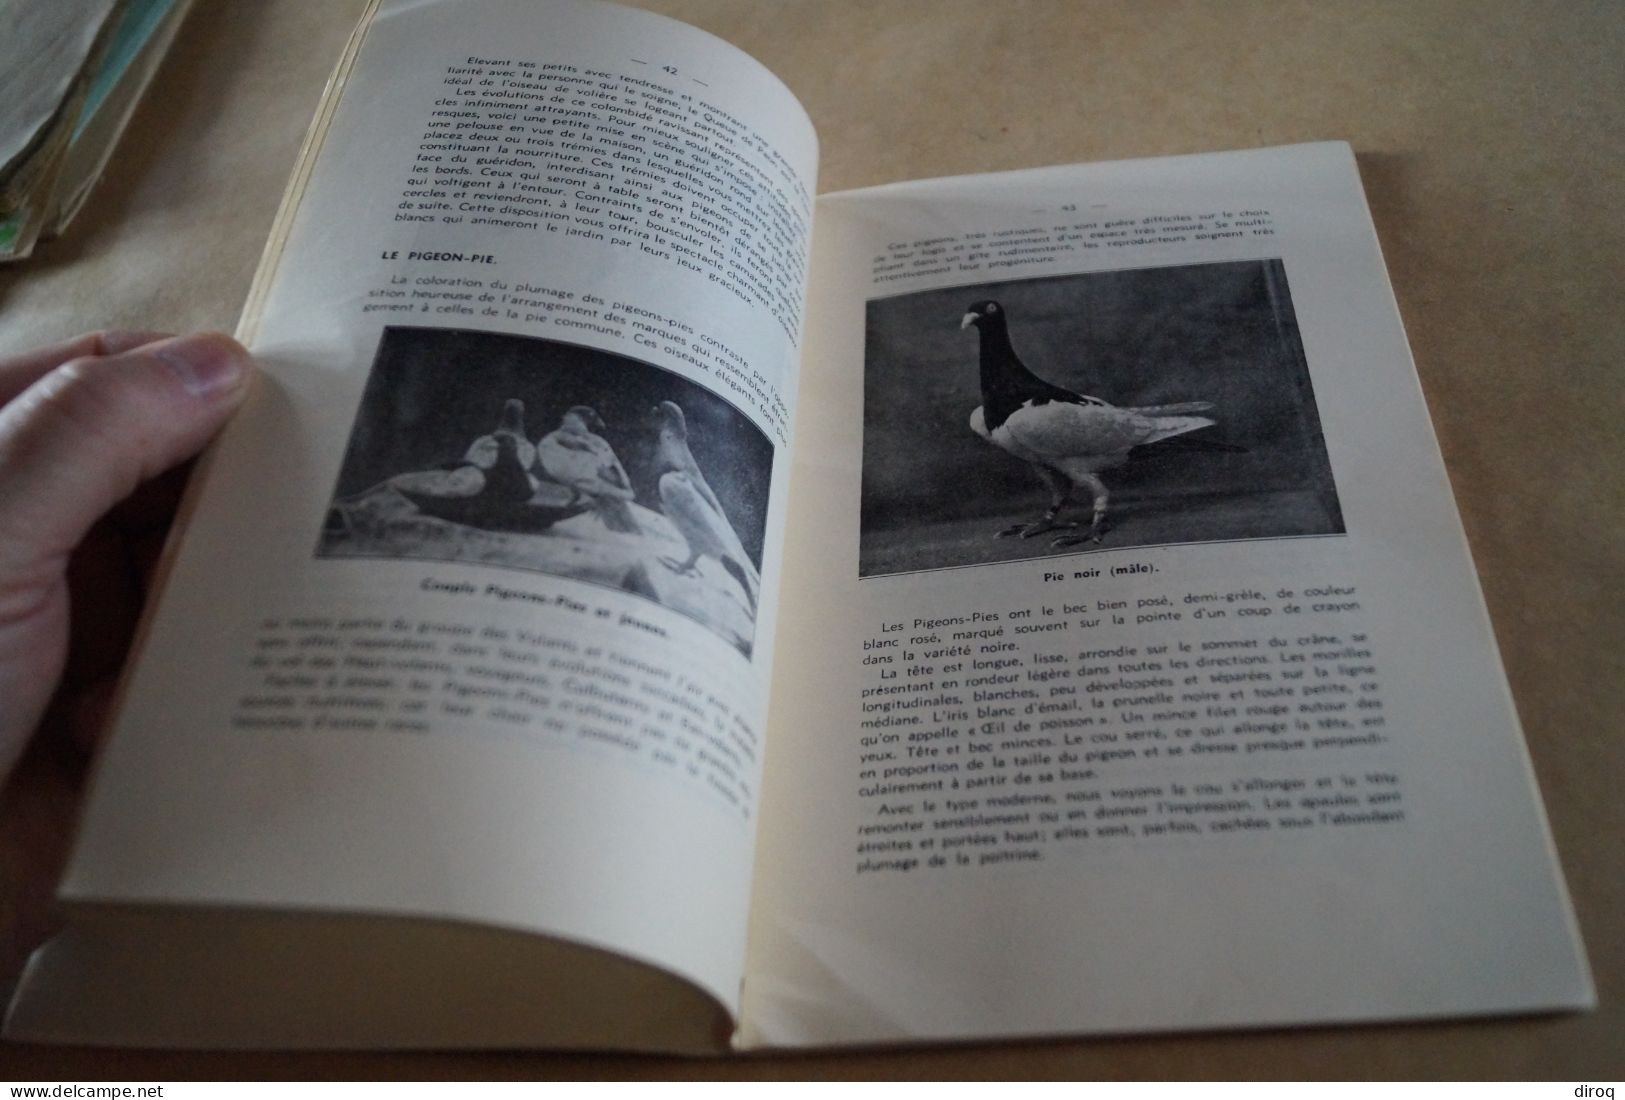 Colombophile,Pigeon,RARE ancien ouvrage avec lot de plumes,102 pages,21 Cm. / 13,5 Cm